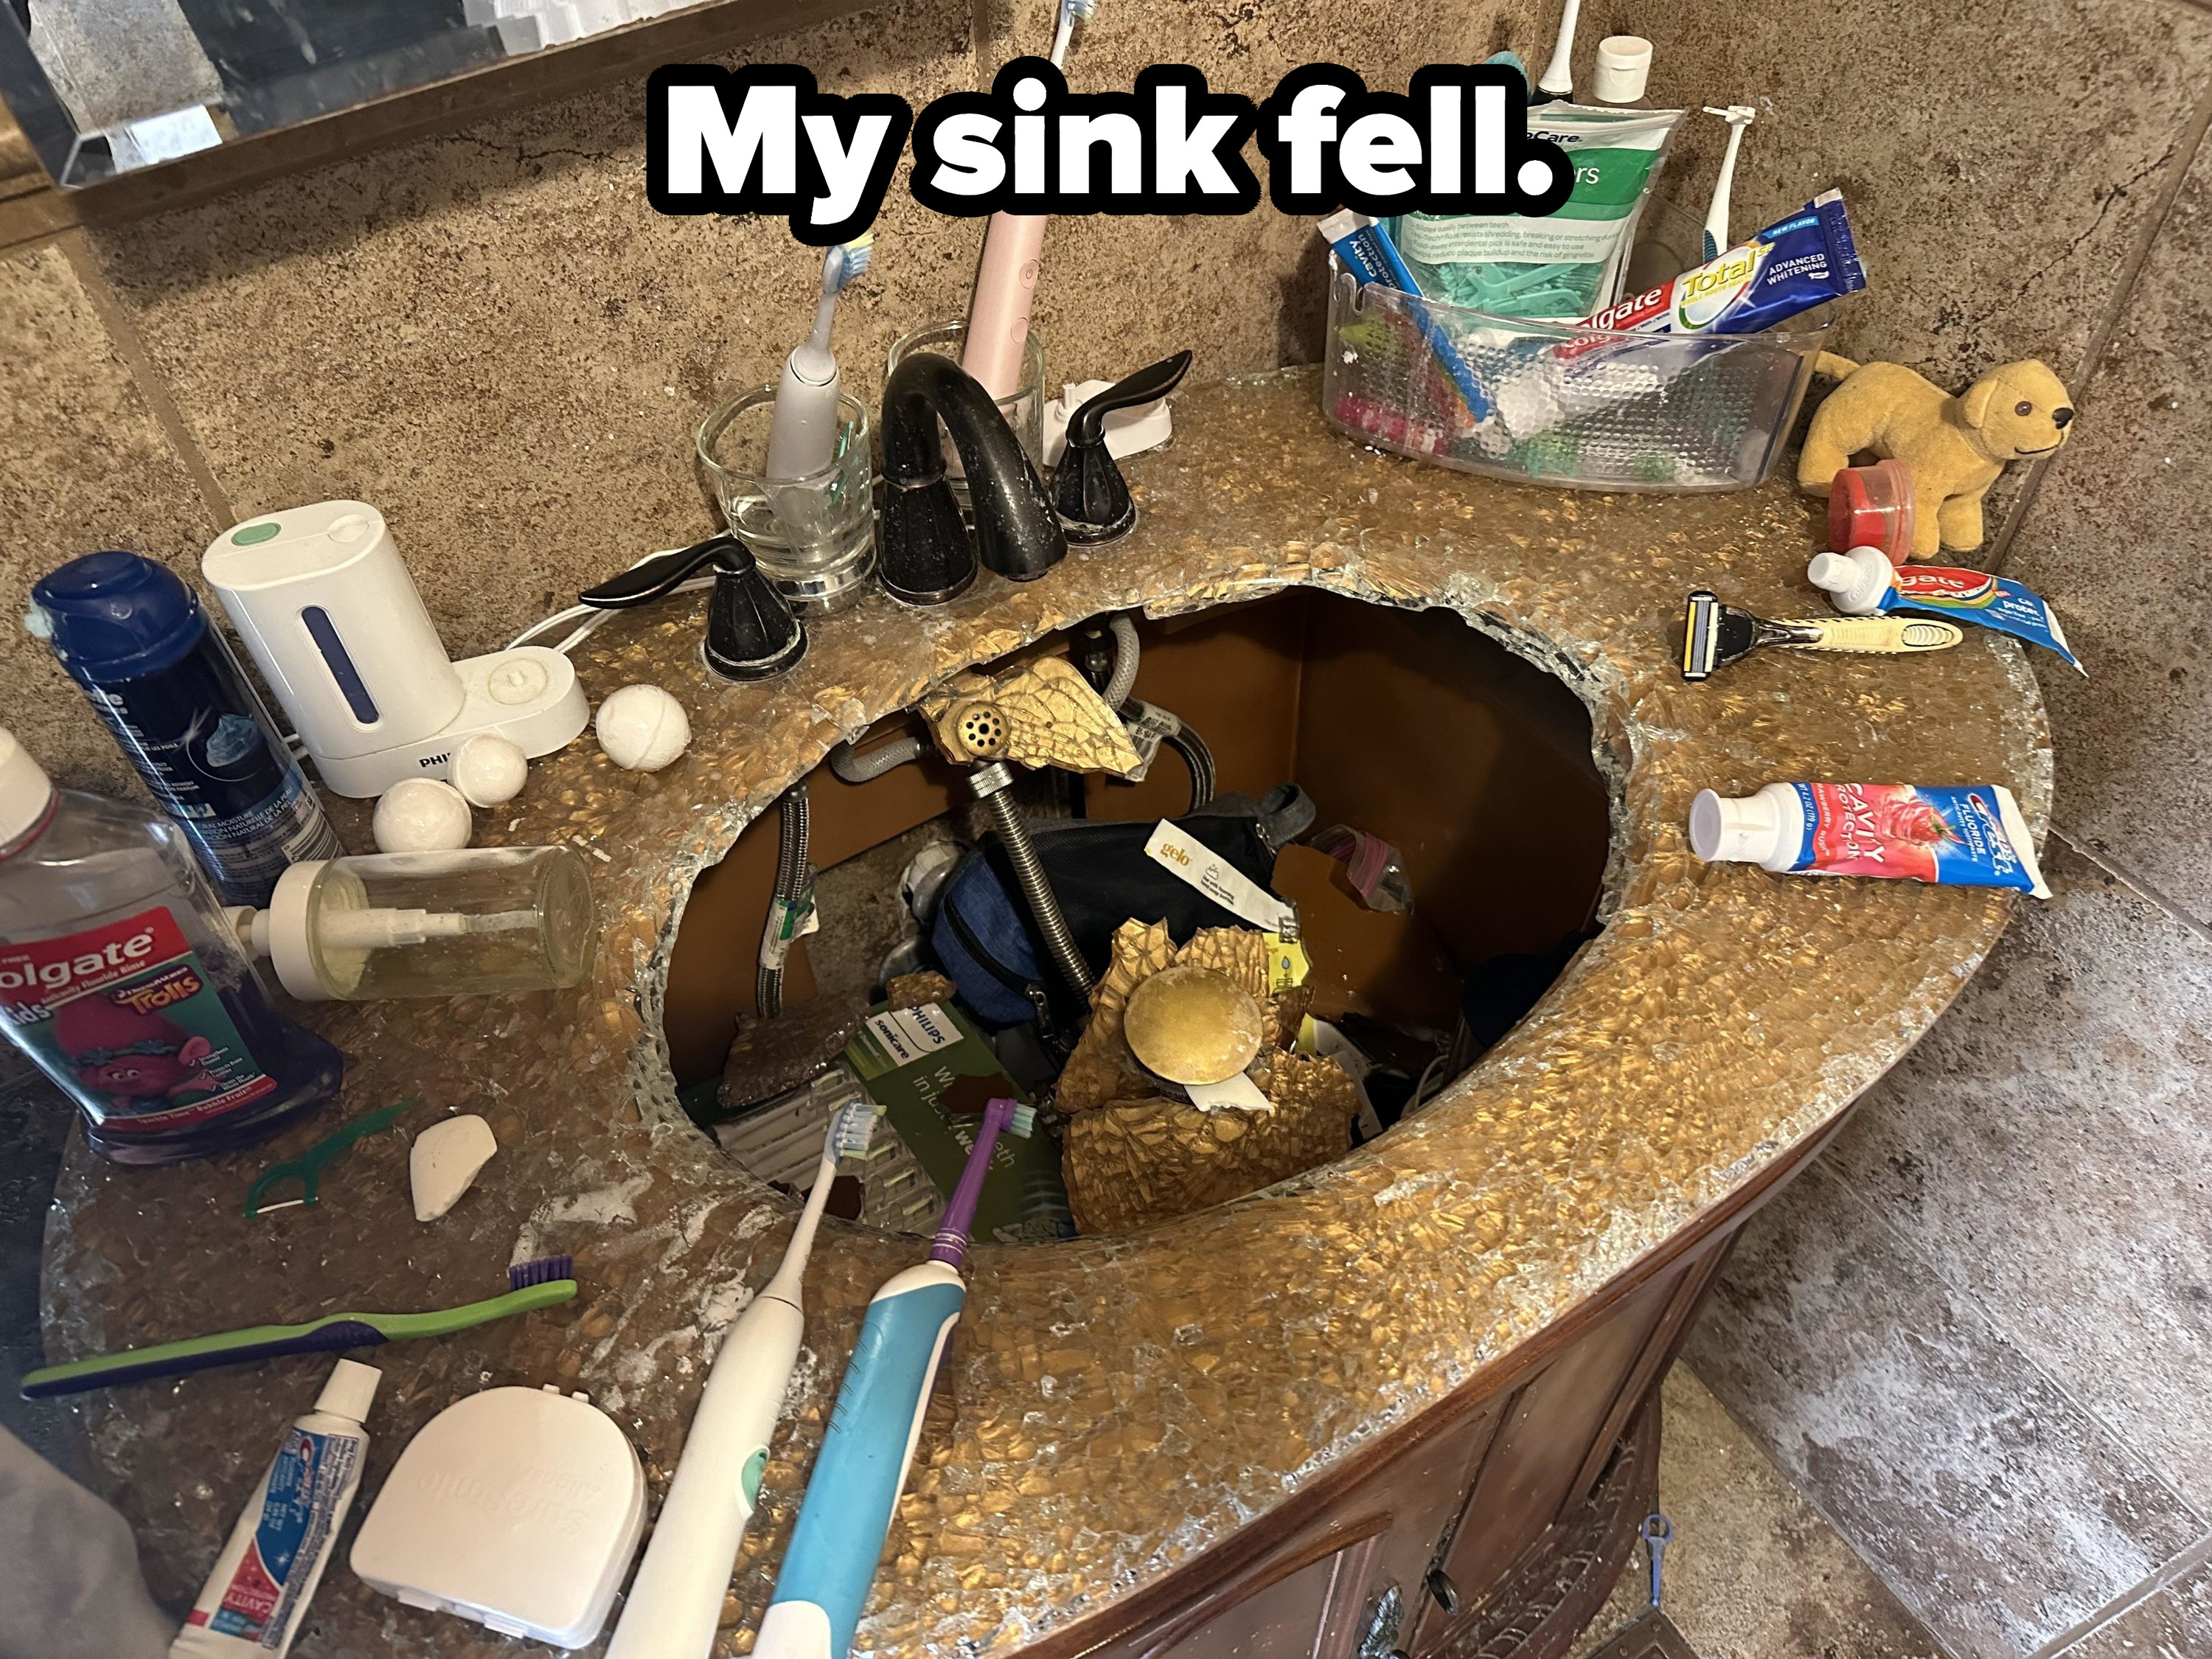 sink that sank